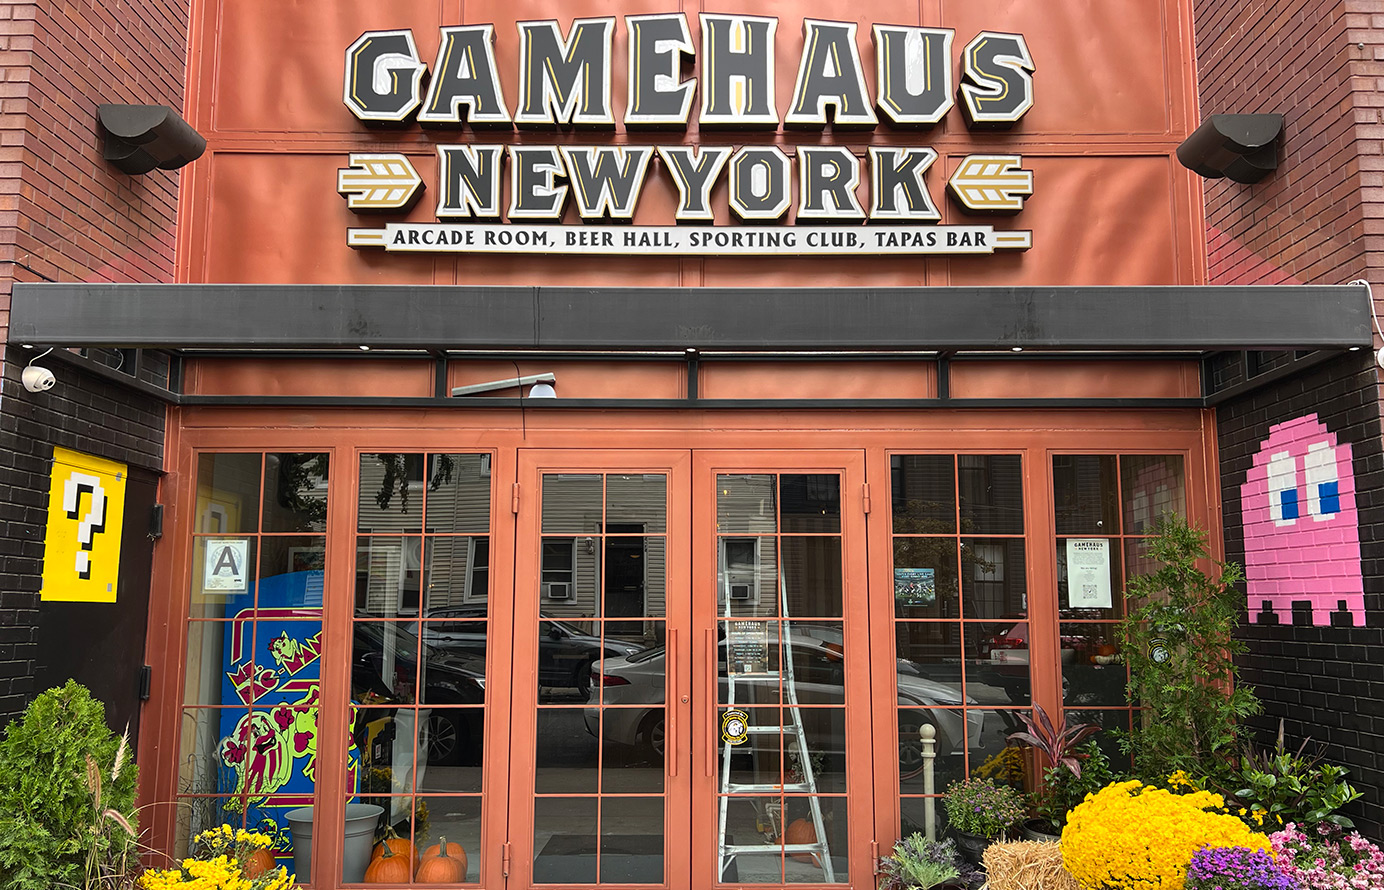 Gamehaus New York